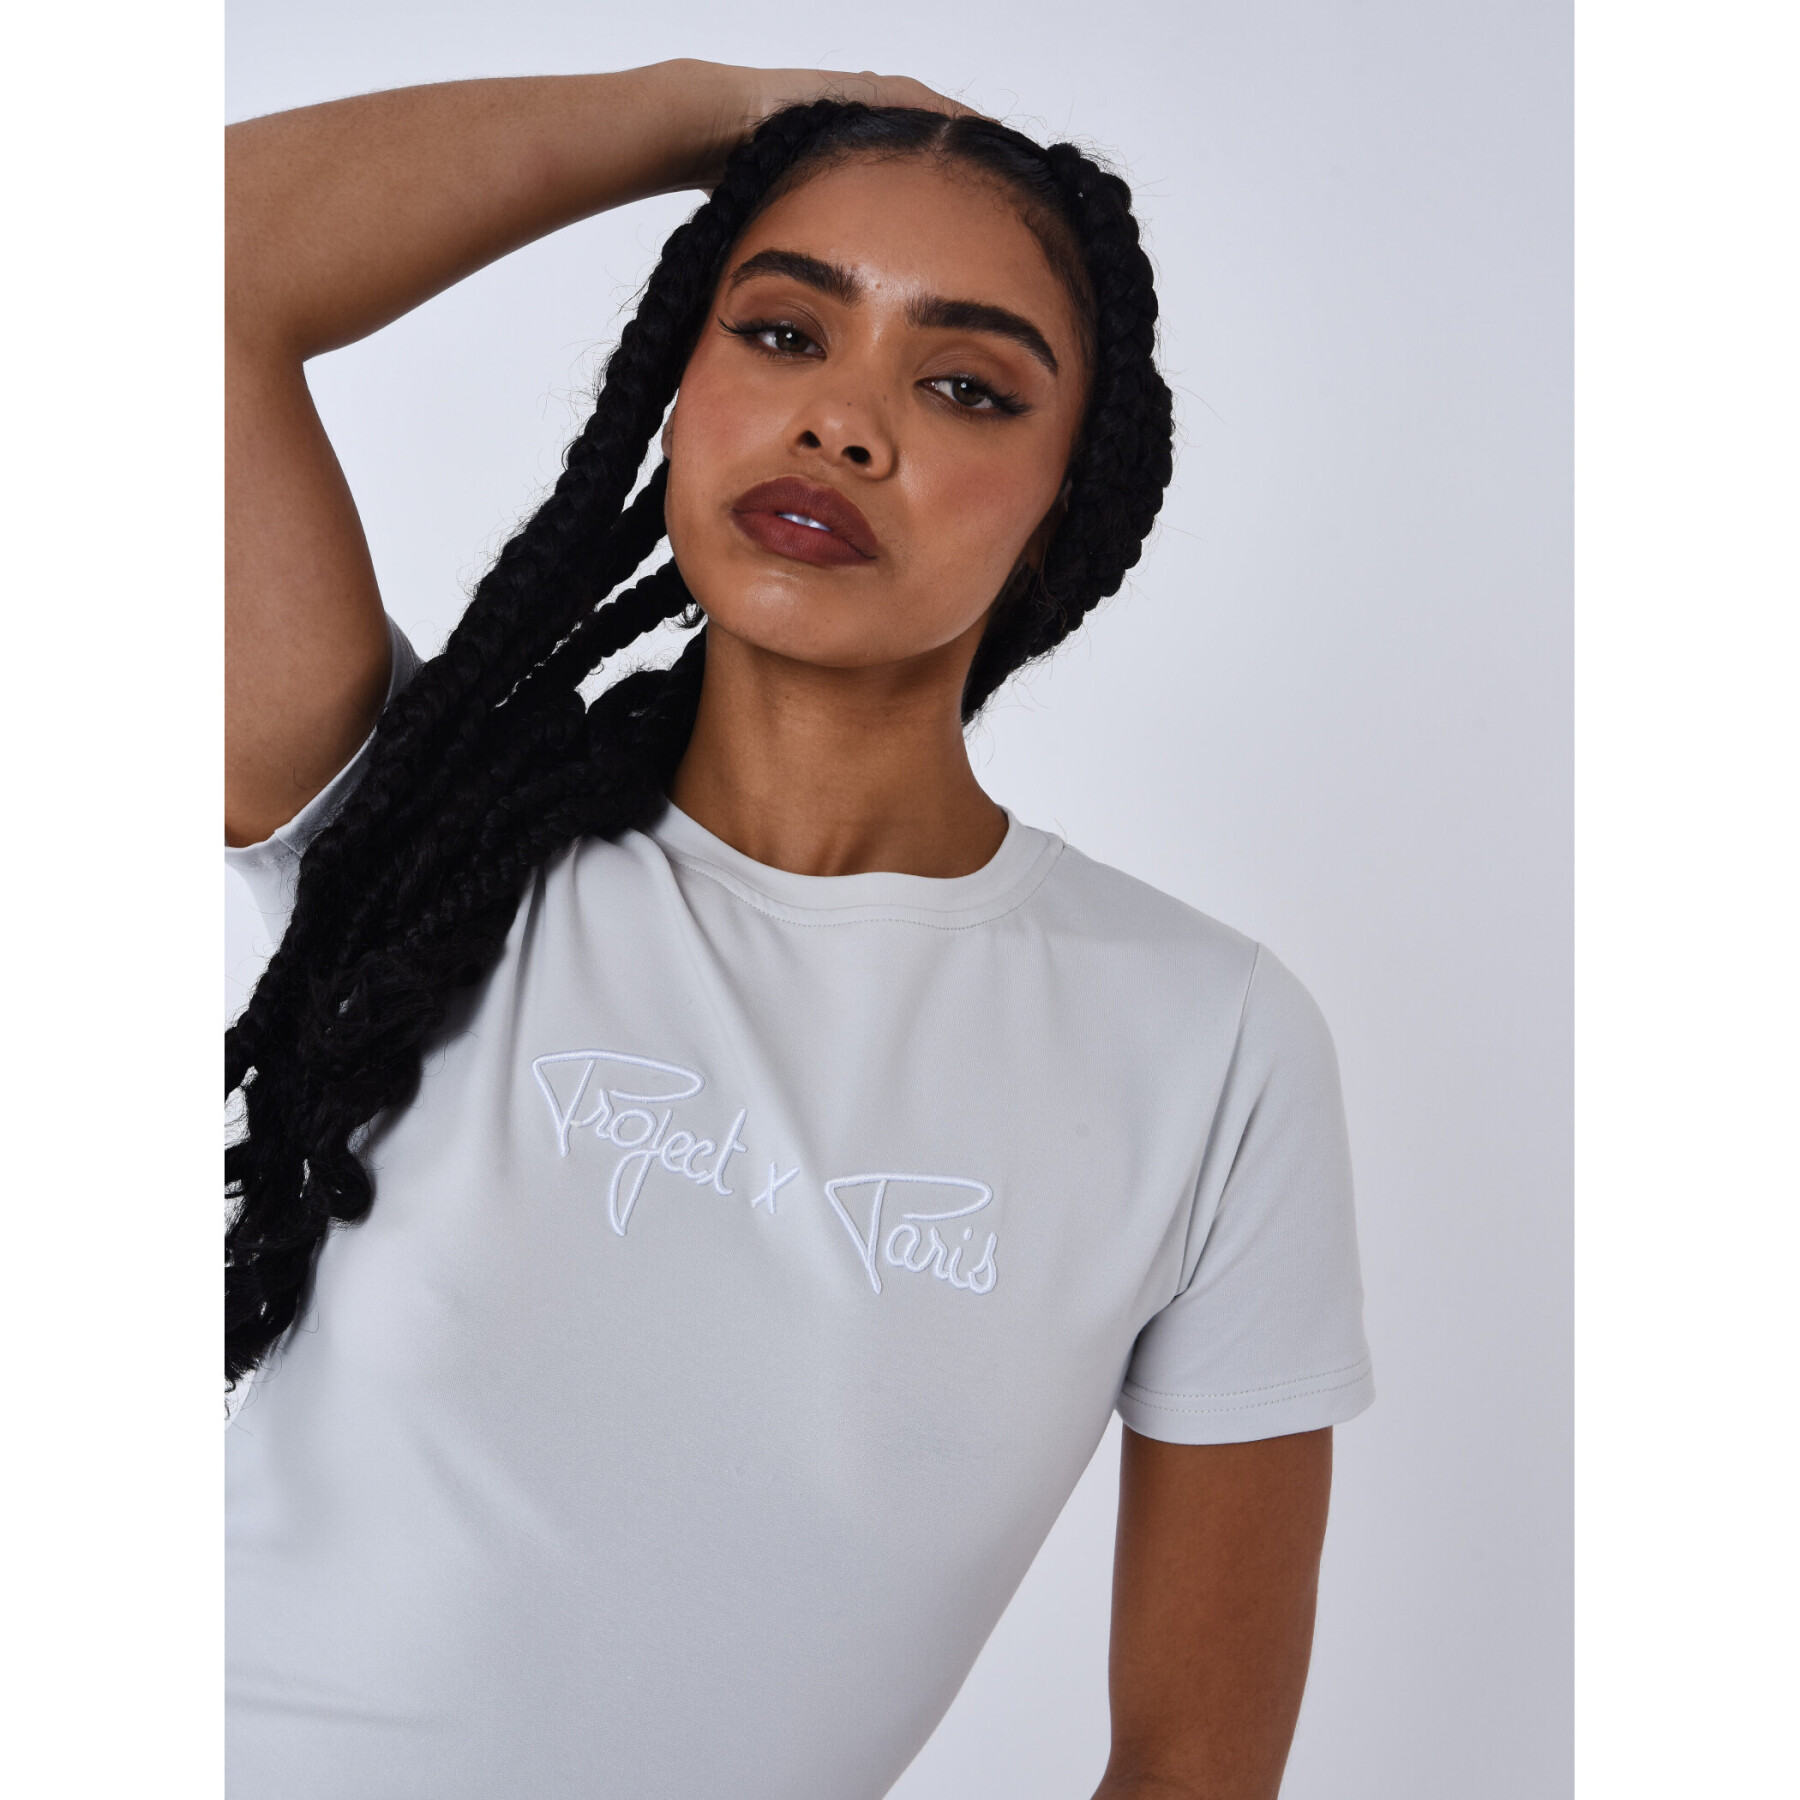 Women's signature T-shirt Project X Paris